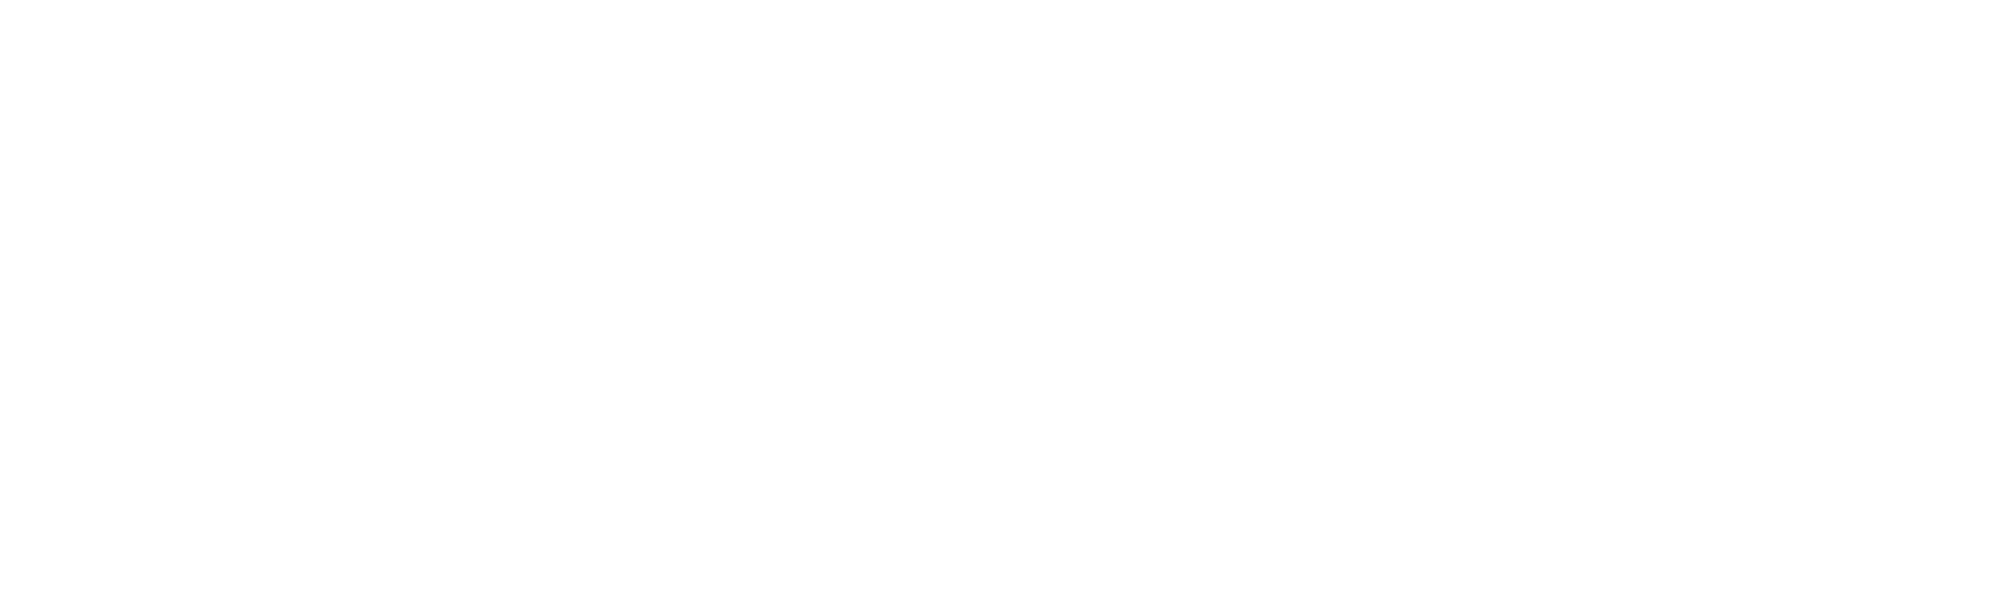 AppScho_2021_logo-dark-horizontal-transparent